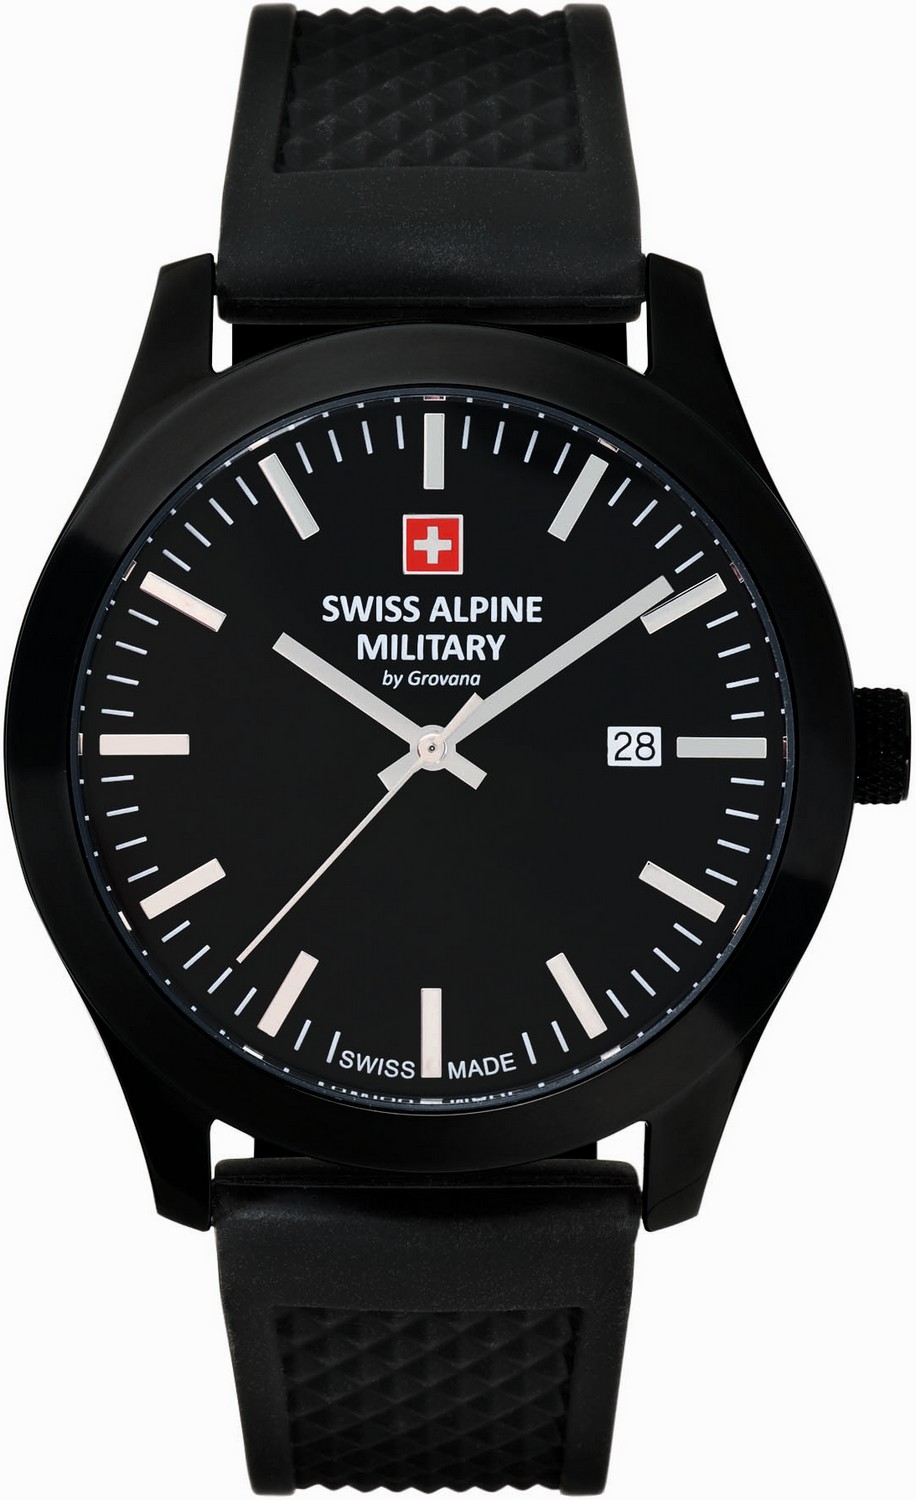 SWISS ALPINE MILITARY  Мужские швейцарские часы, кварцевый механизм, сталь с покрытием, 43 мм